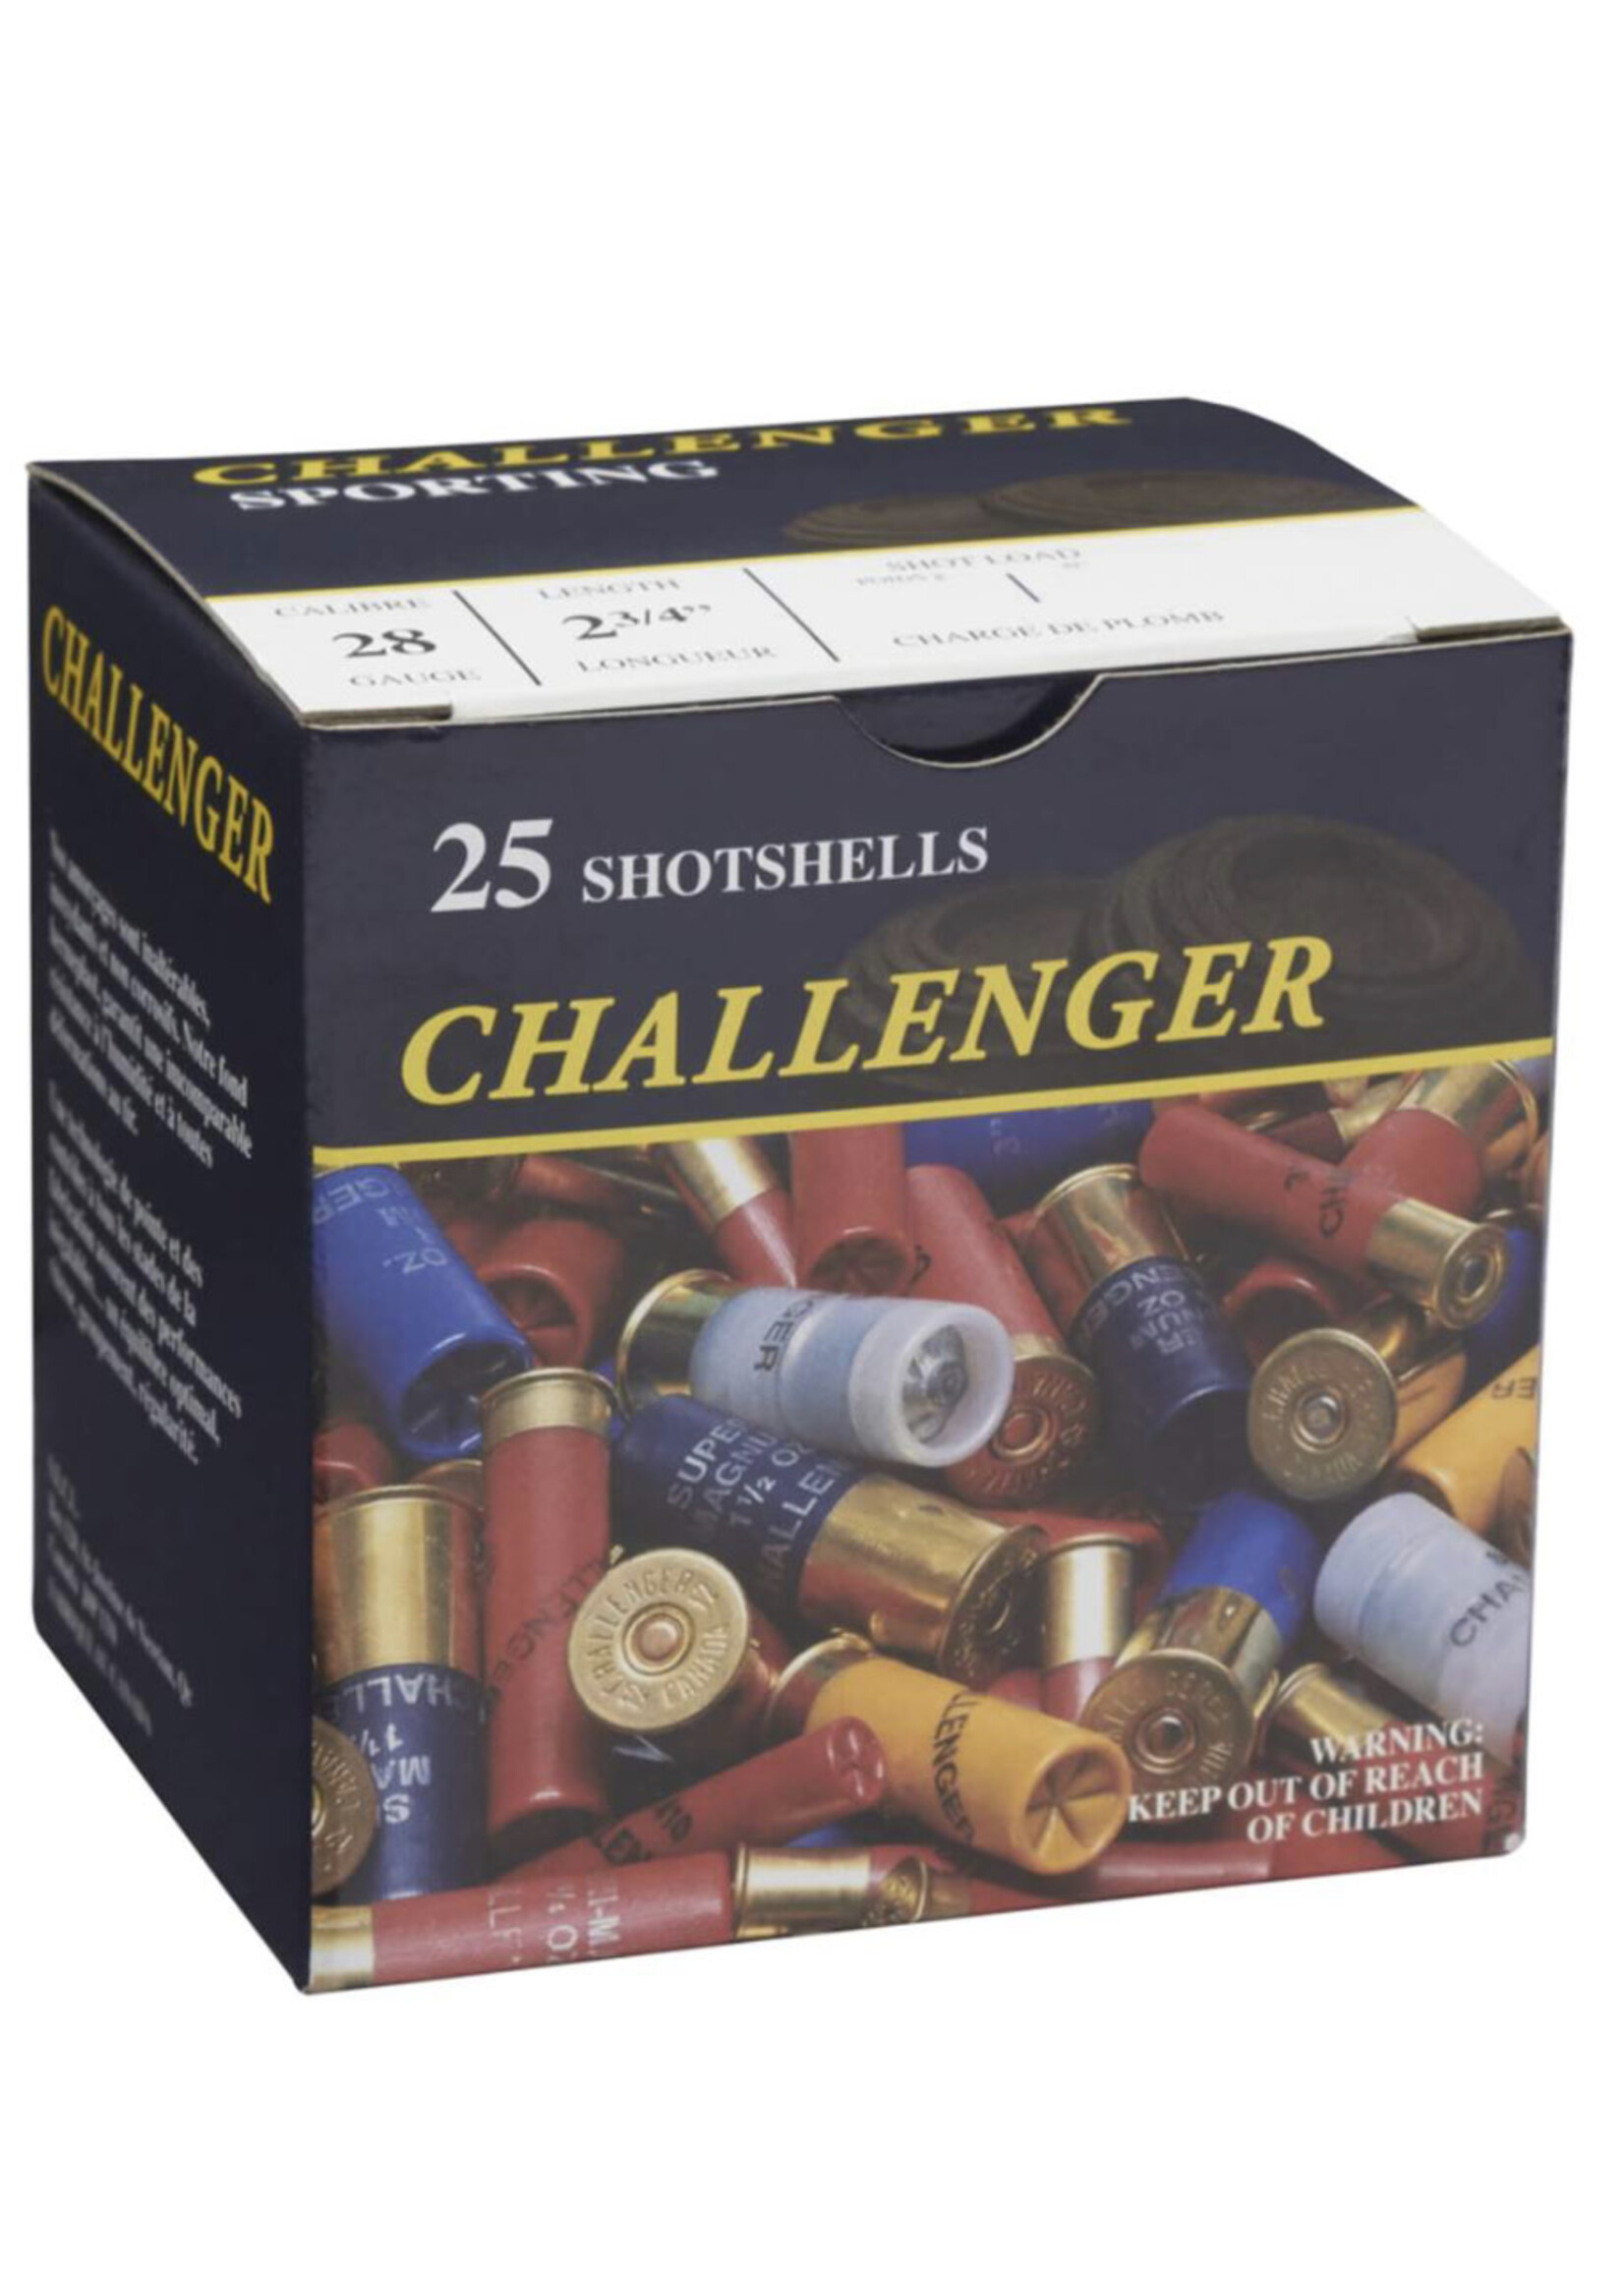 CHALLENGER CHALLENGER 28 GA 2 3/4” #8 TARGET LOAD 25 SHOTSHELLS